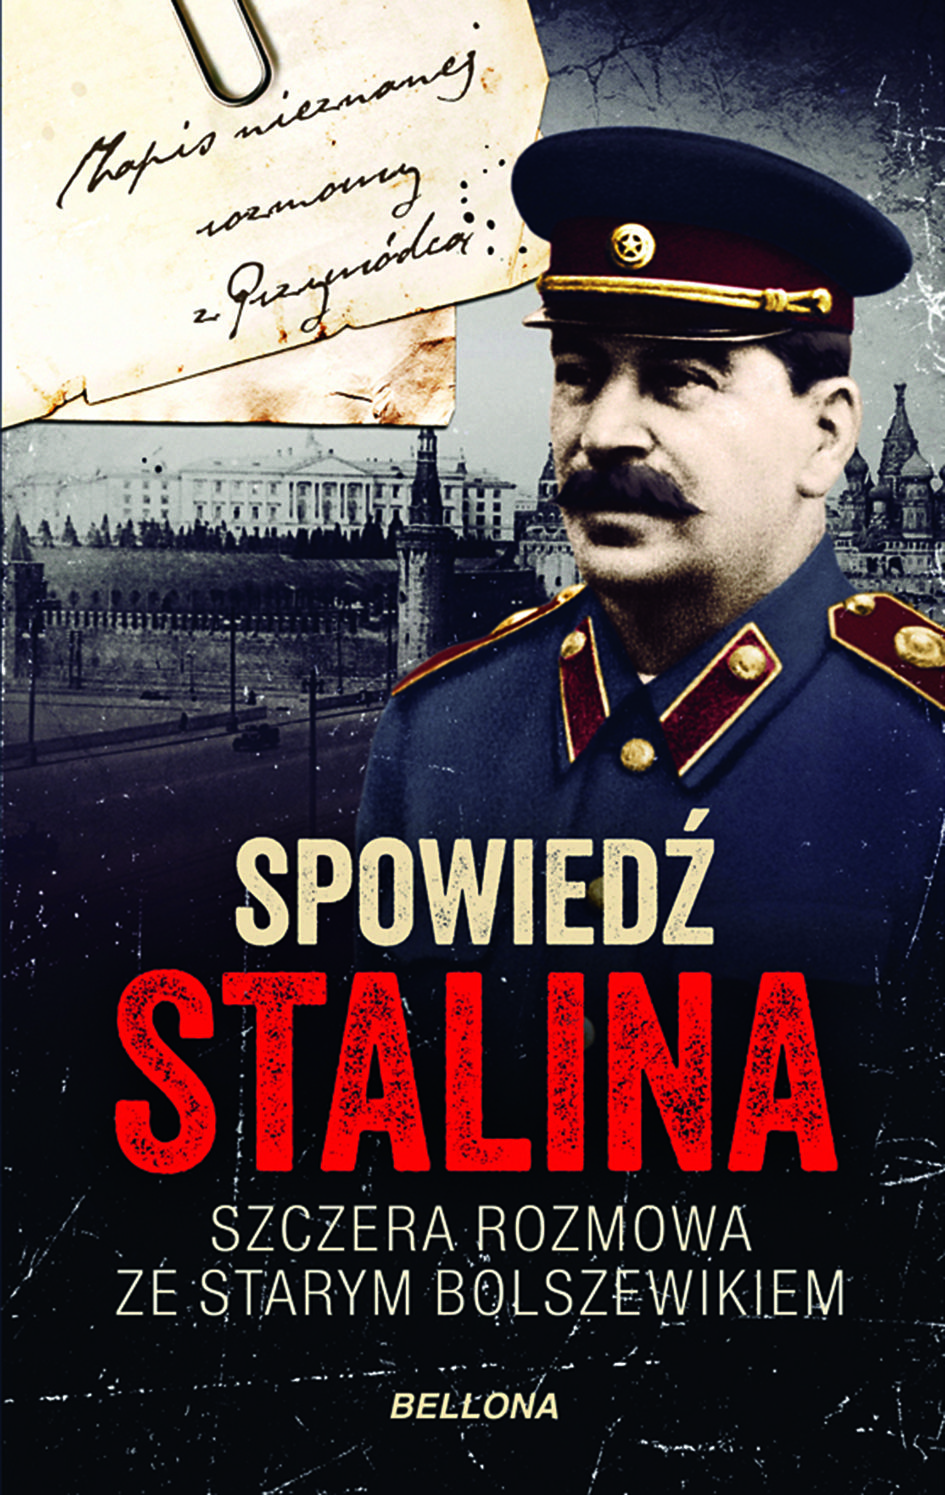 Tekst powstał w oparciu o książkę Christophera Machta "Spowiedź Stalina" (Wydawnictwo Bellona 2017).